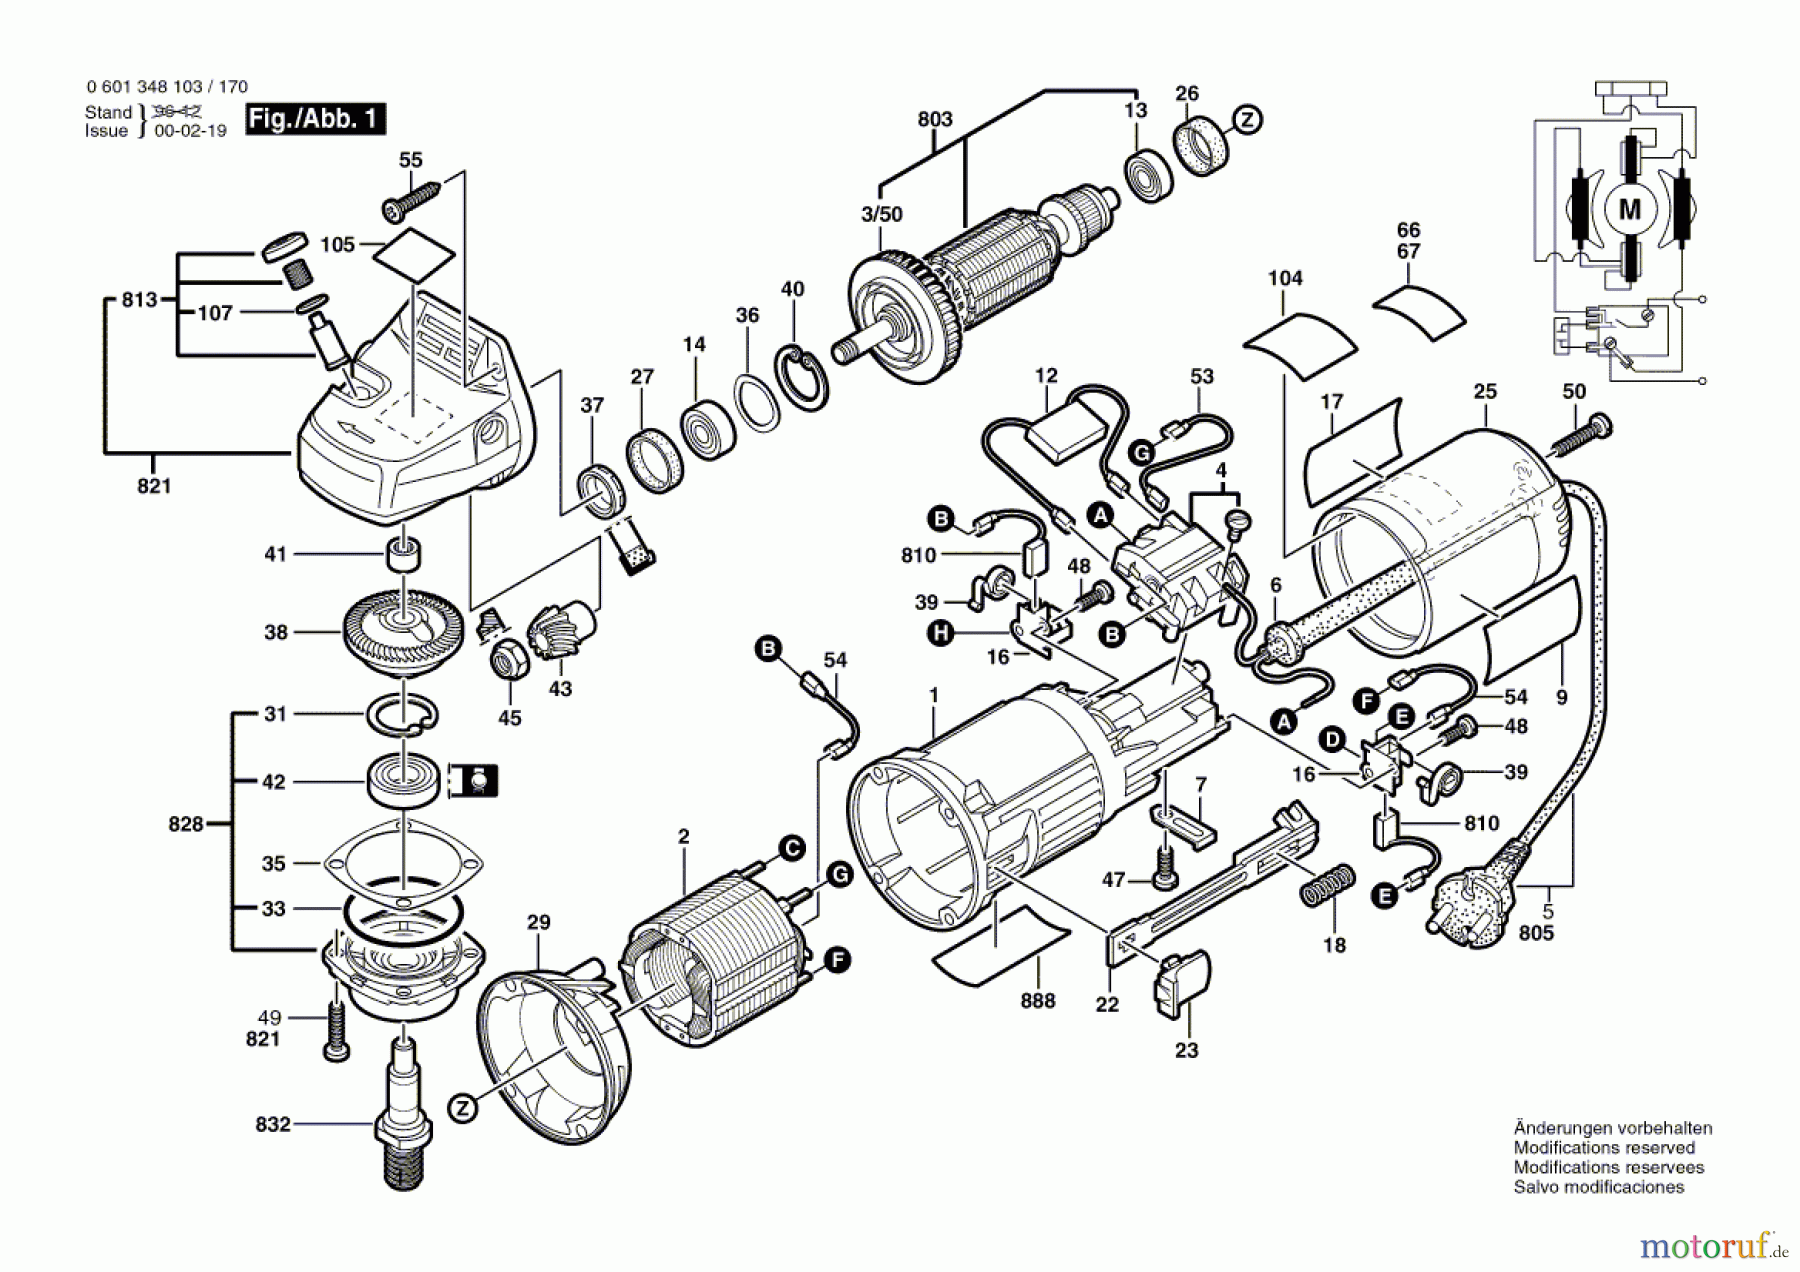  Bosch Werkzeug Winkelschleifer GWS 7-125 Seite 1